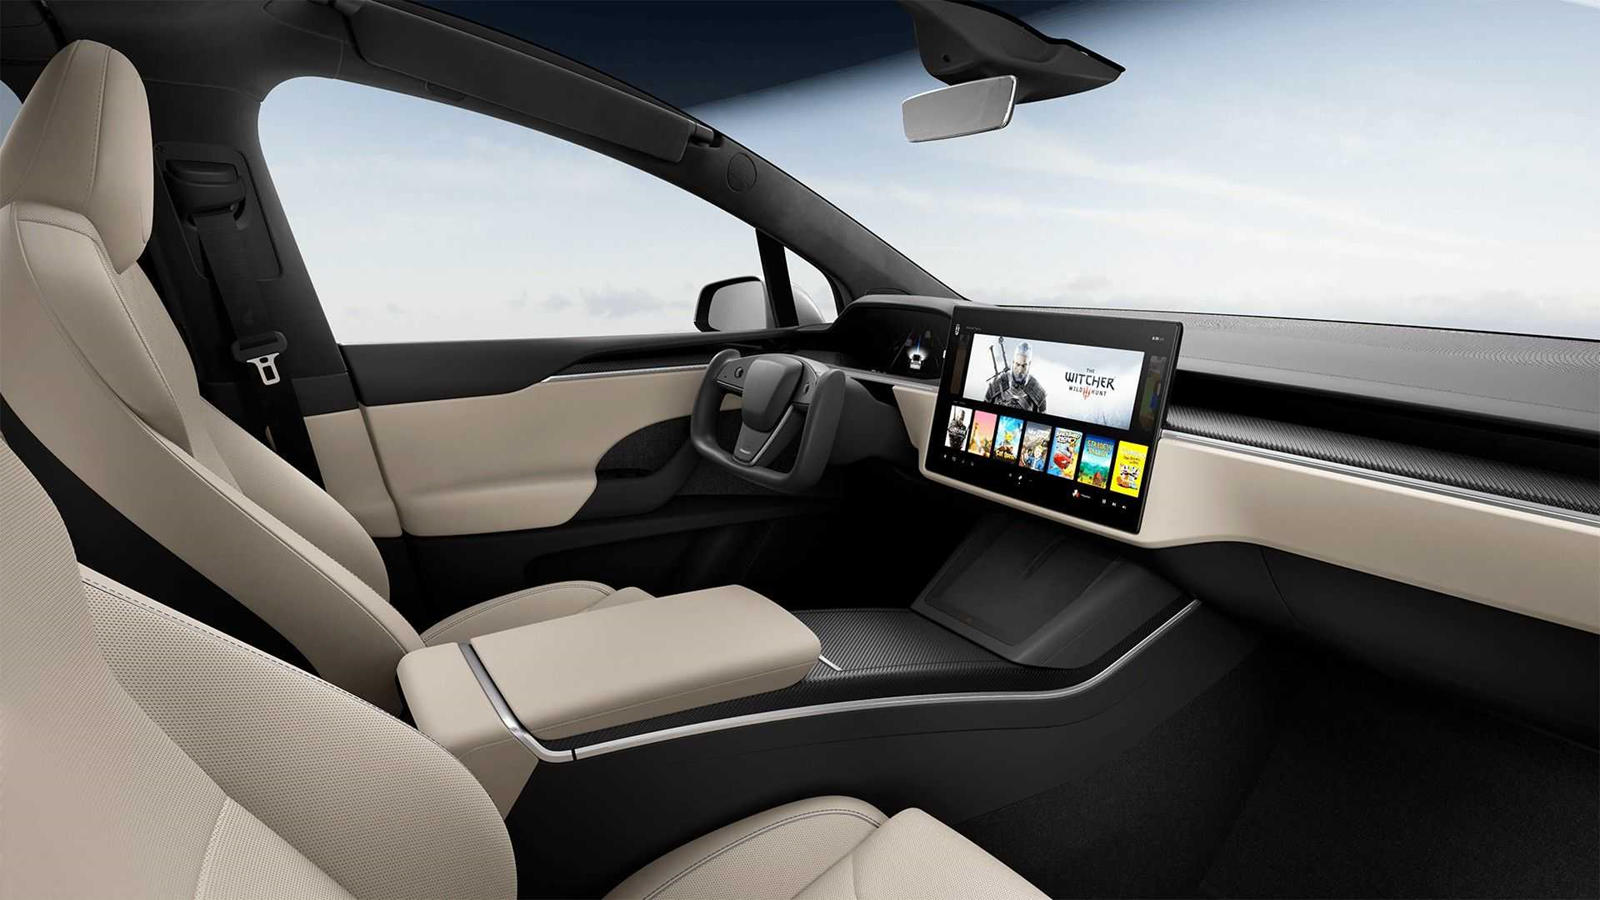 Запущенная в 2012 году Model S только что получила первое значимое обновление как стиля, так и производительности. С небольшой помпой Tesla обновила своих акционеров и свой веб-сайт и добавила опцию Plaid +, рекламирующую дальность хода 830 км, время